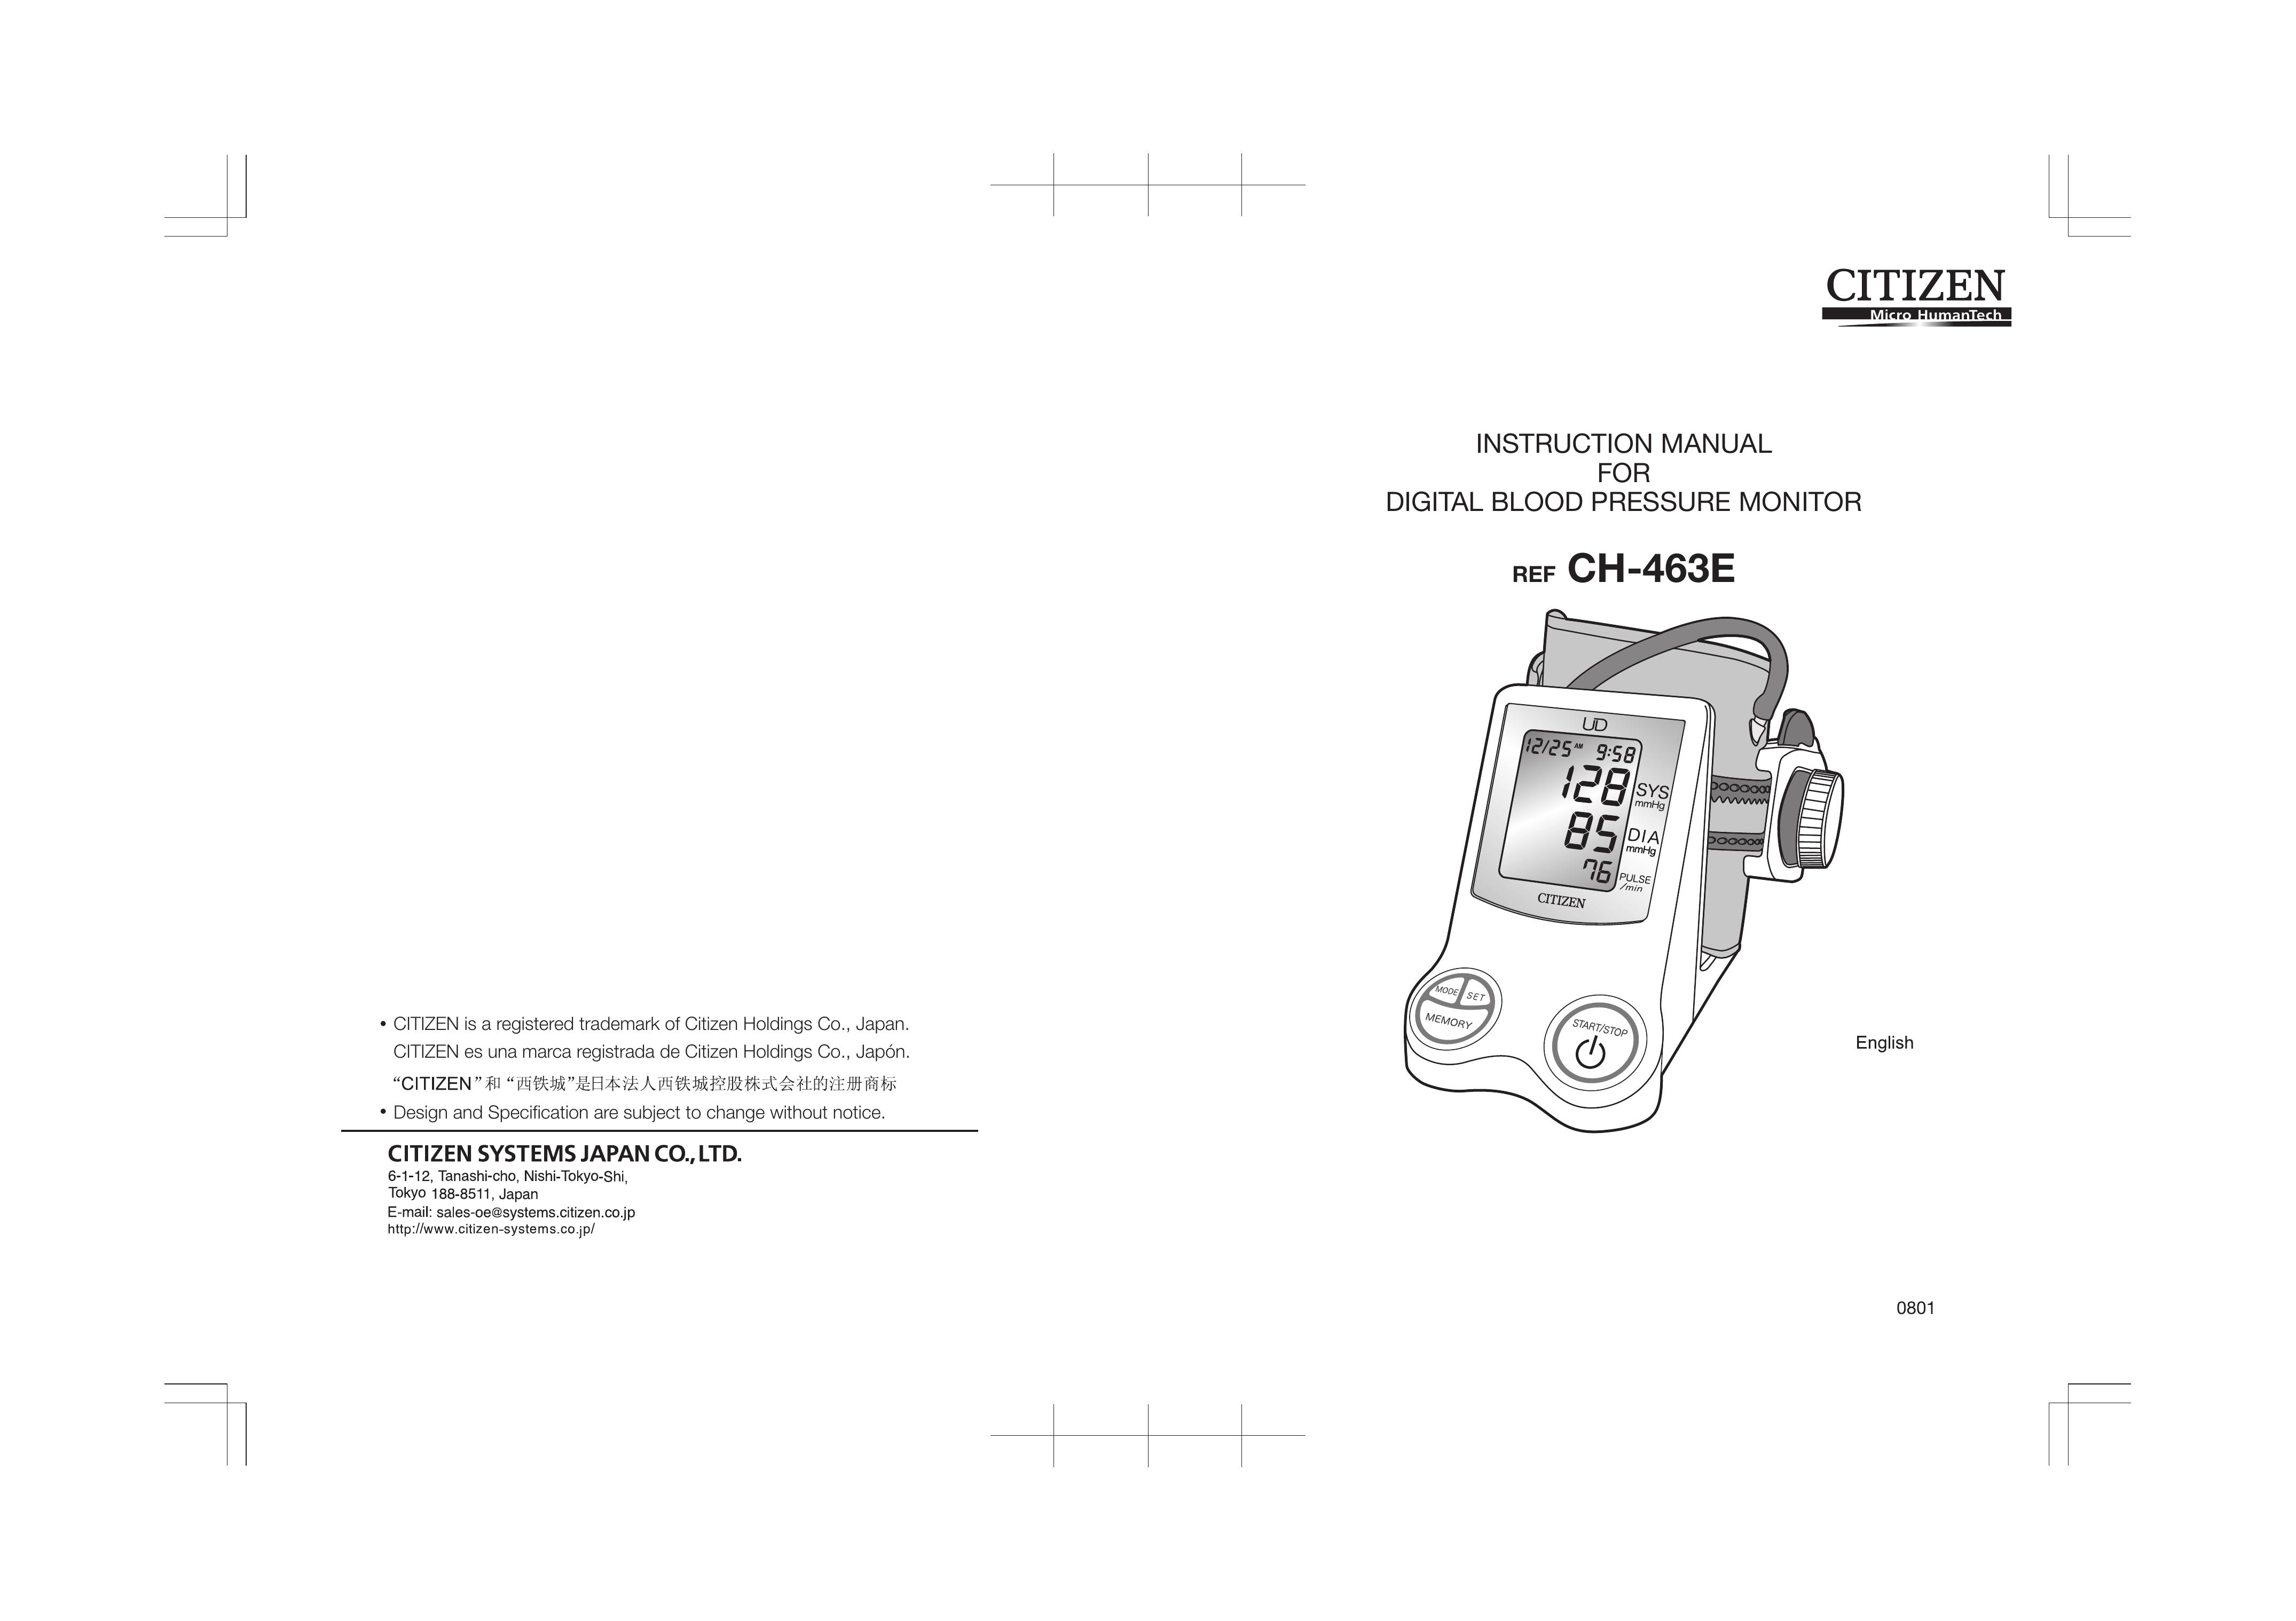 Citizen CH-463E Blood Pressure Monitor User Manual